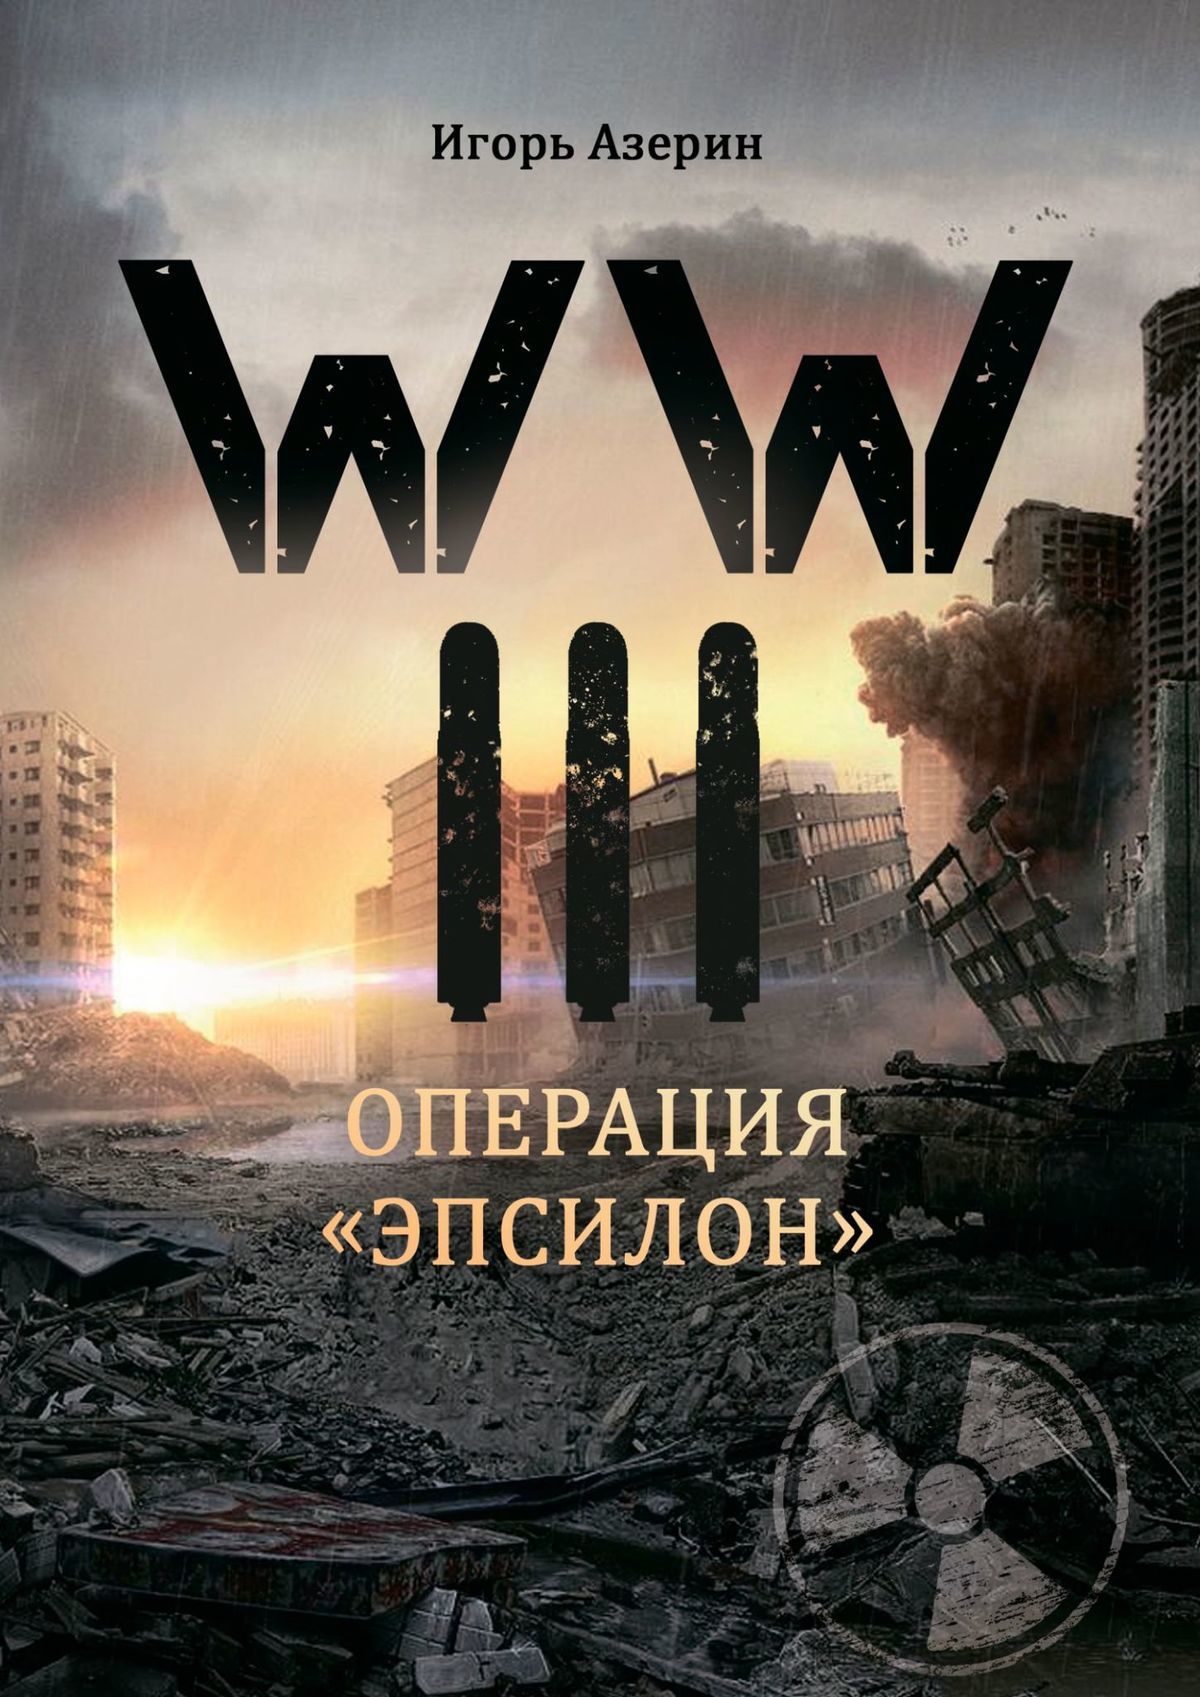 Азерин Игорь - WW III. Операция «Эпсилон» скачать бесплатно